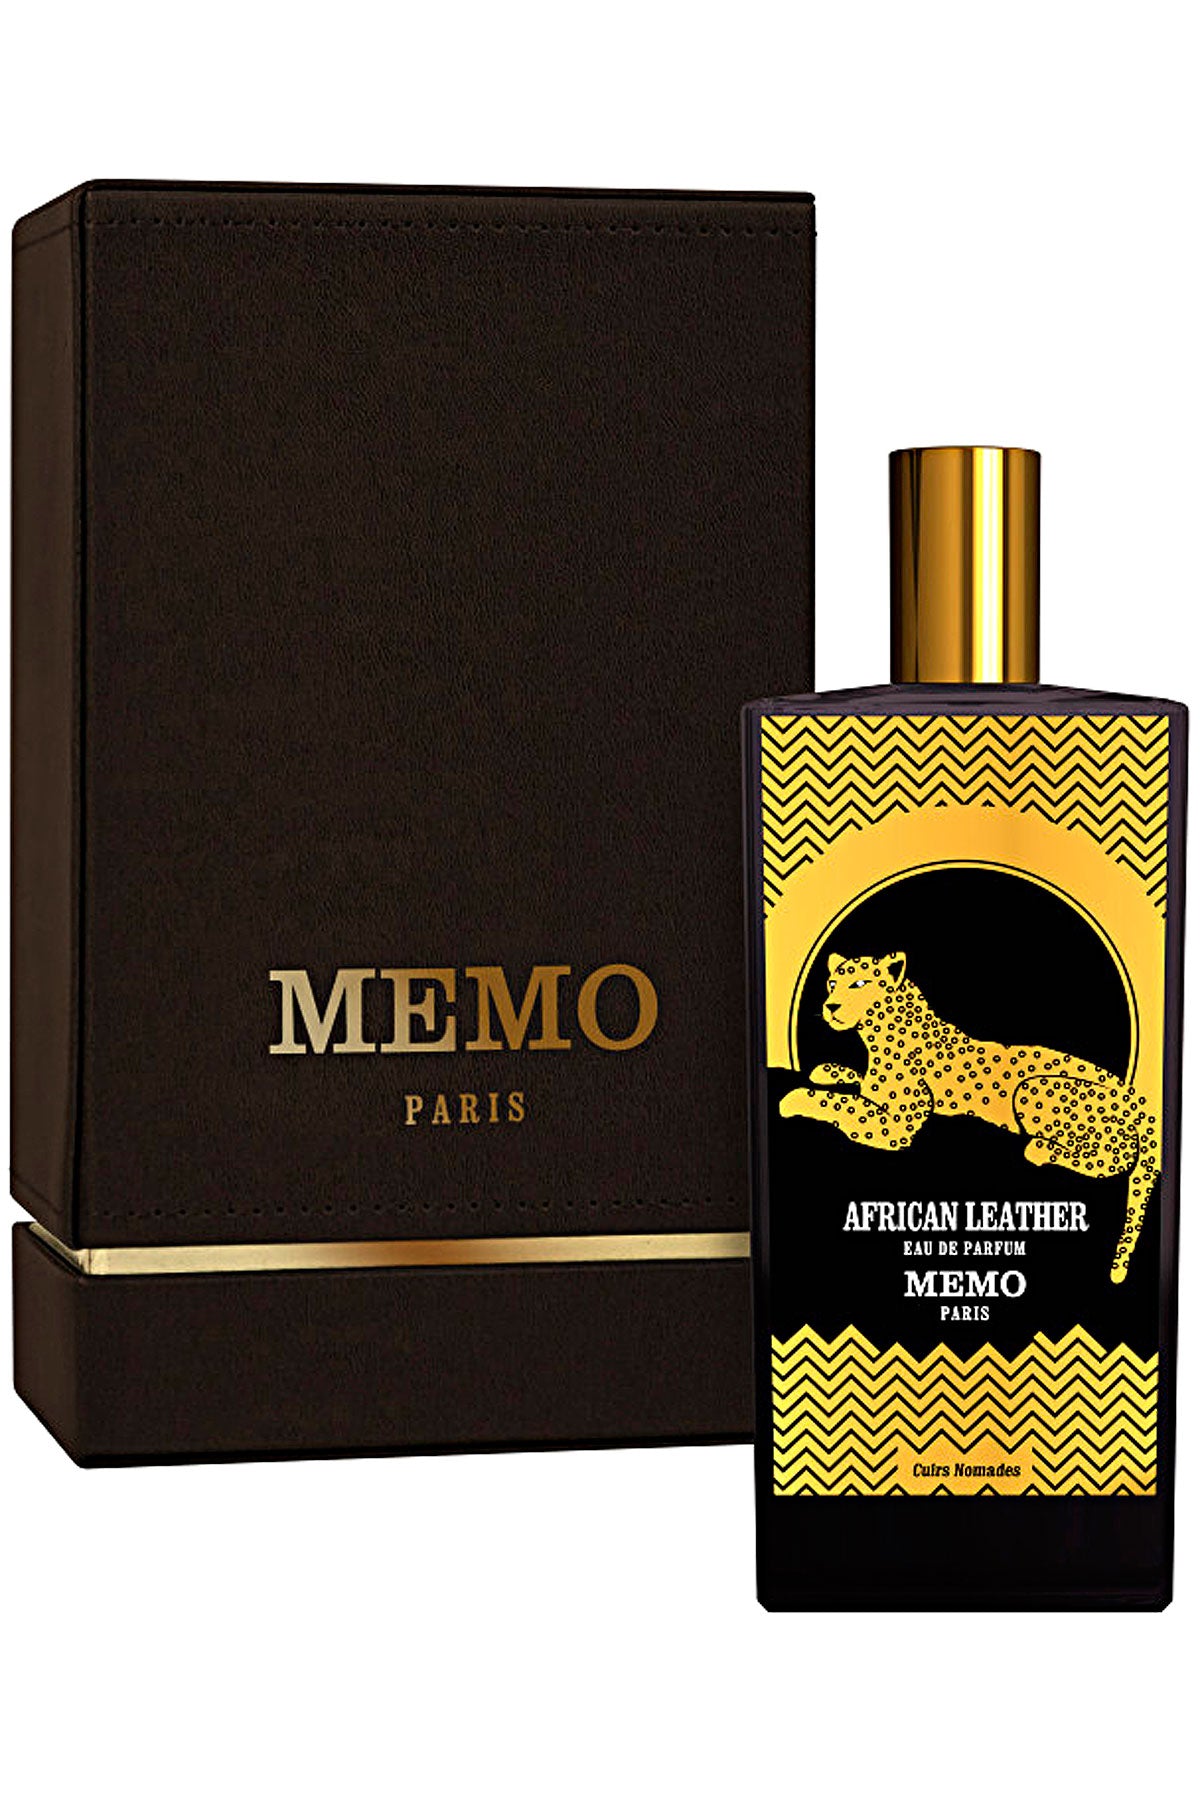 Memo Paris African Leather - Cuirs Nomades - Eau de Parfum